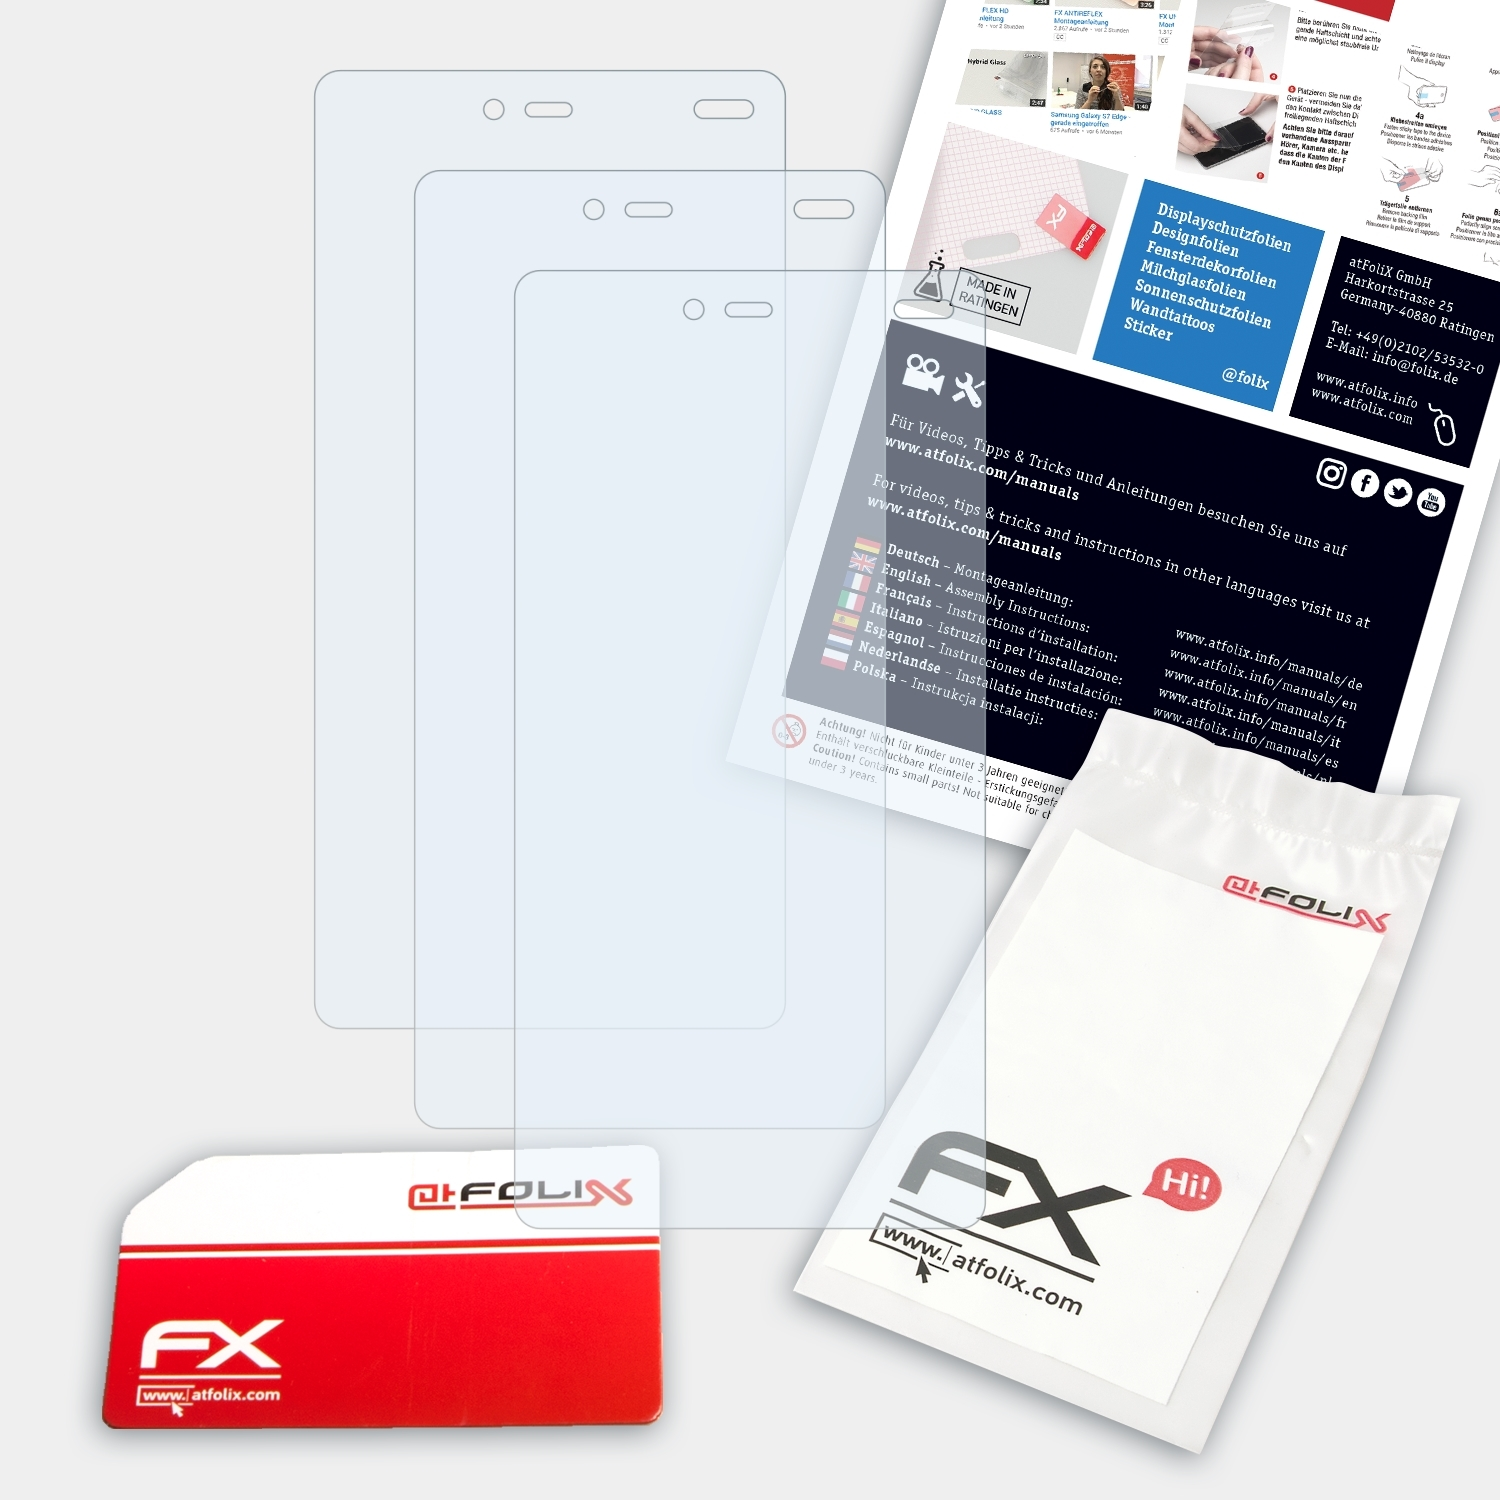 ATFOLIX 3x FX-Clear Displayschutz(für MobiWire Tala)